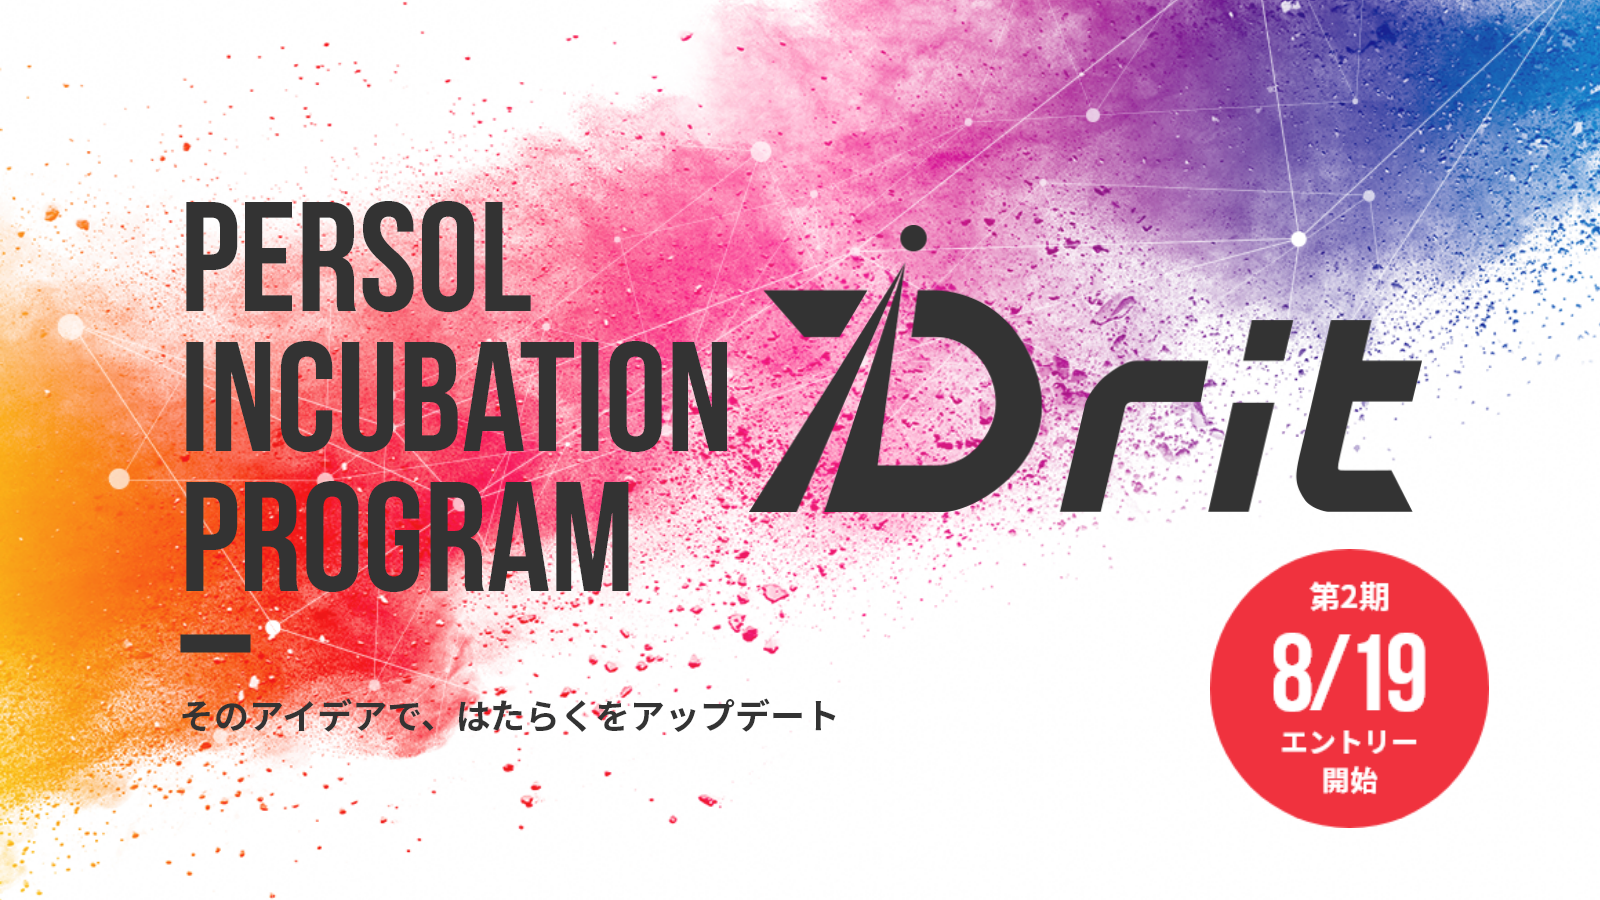 イノベーション体質強化プログラム「Drit」第２期開催スケジュールが決定し、本日公式サイトを開設